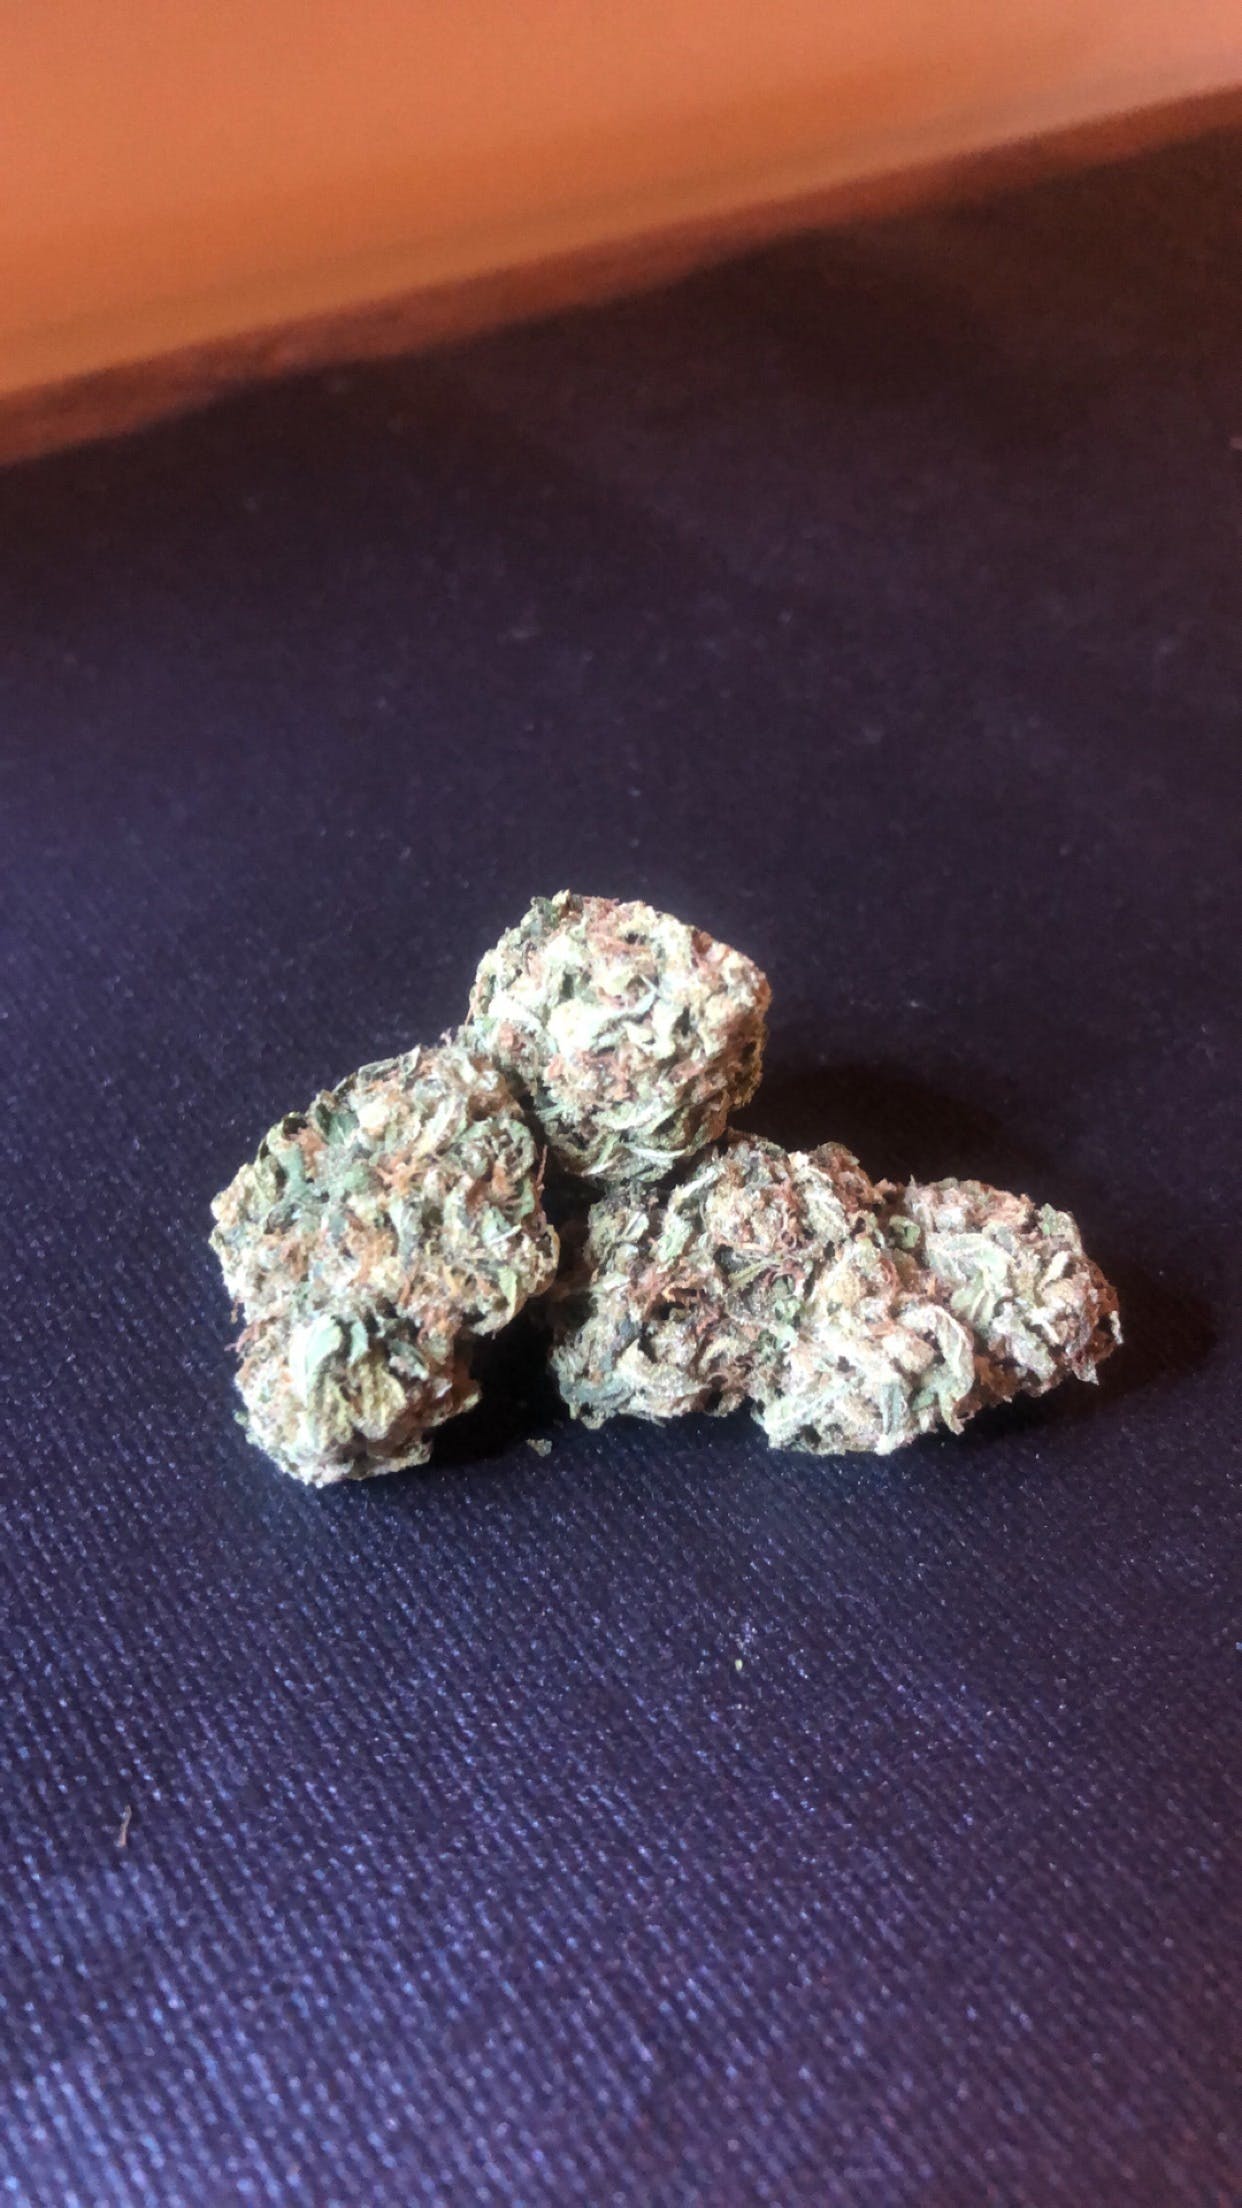 marijuana-dispensaries-planet-13-in-las-vegas-24k